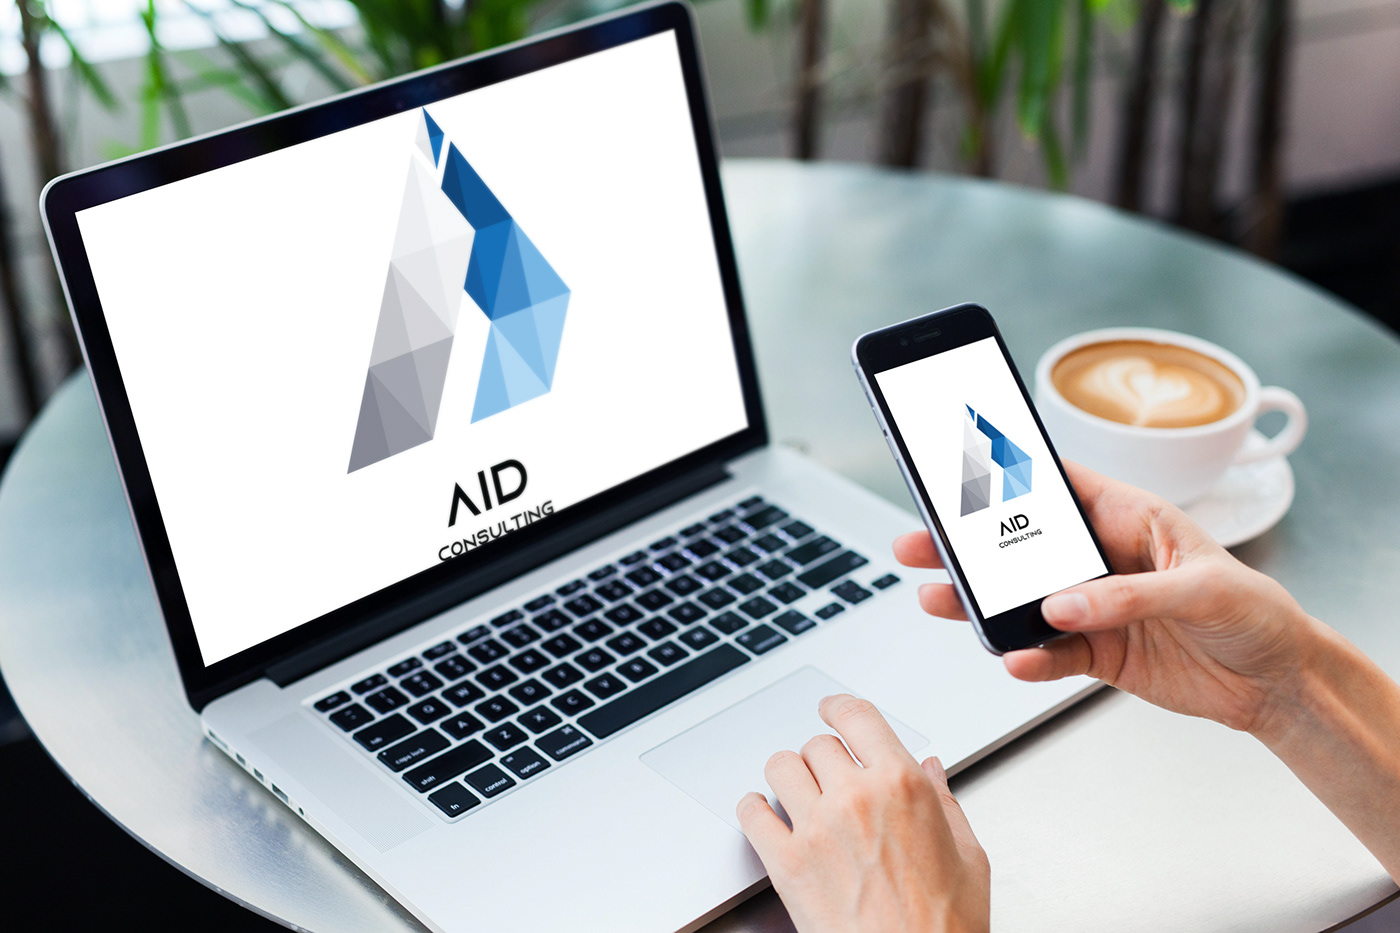 adriana Aid AID Consulting brand Consulting digital duarte logo marketing  